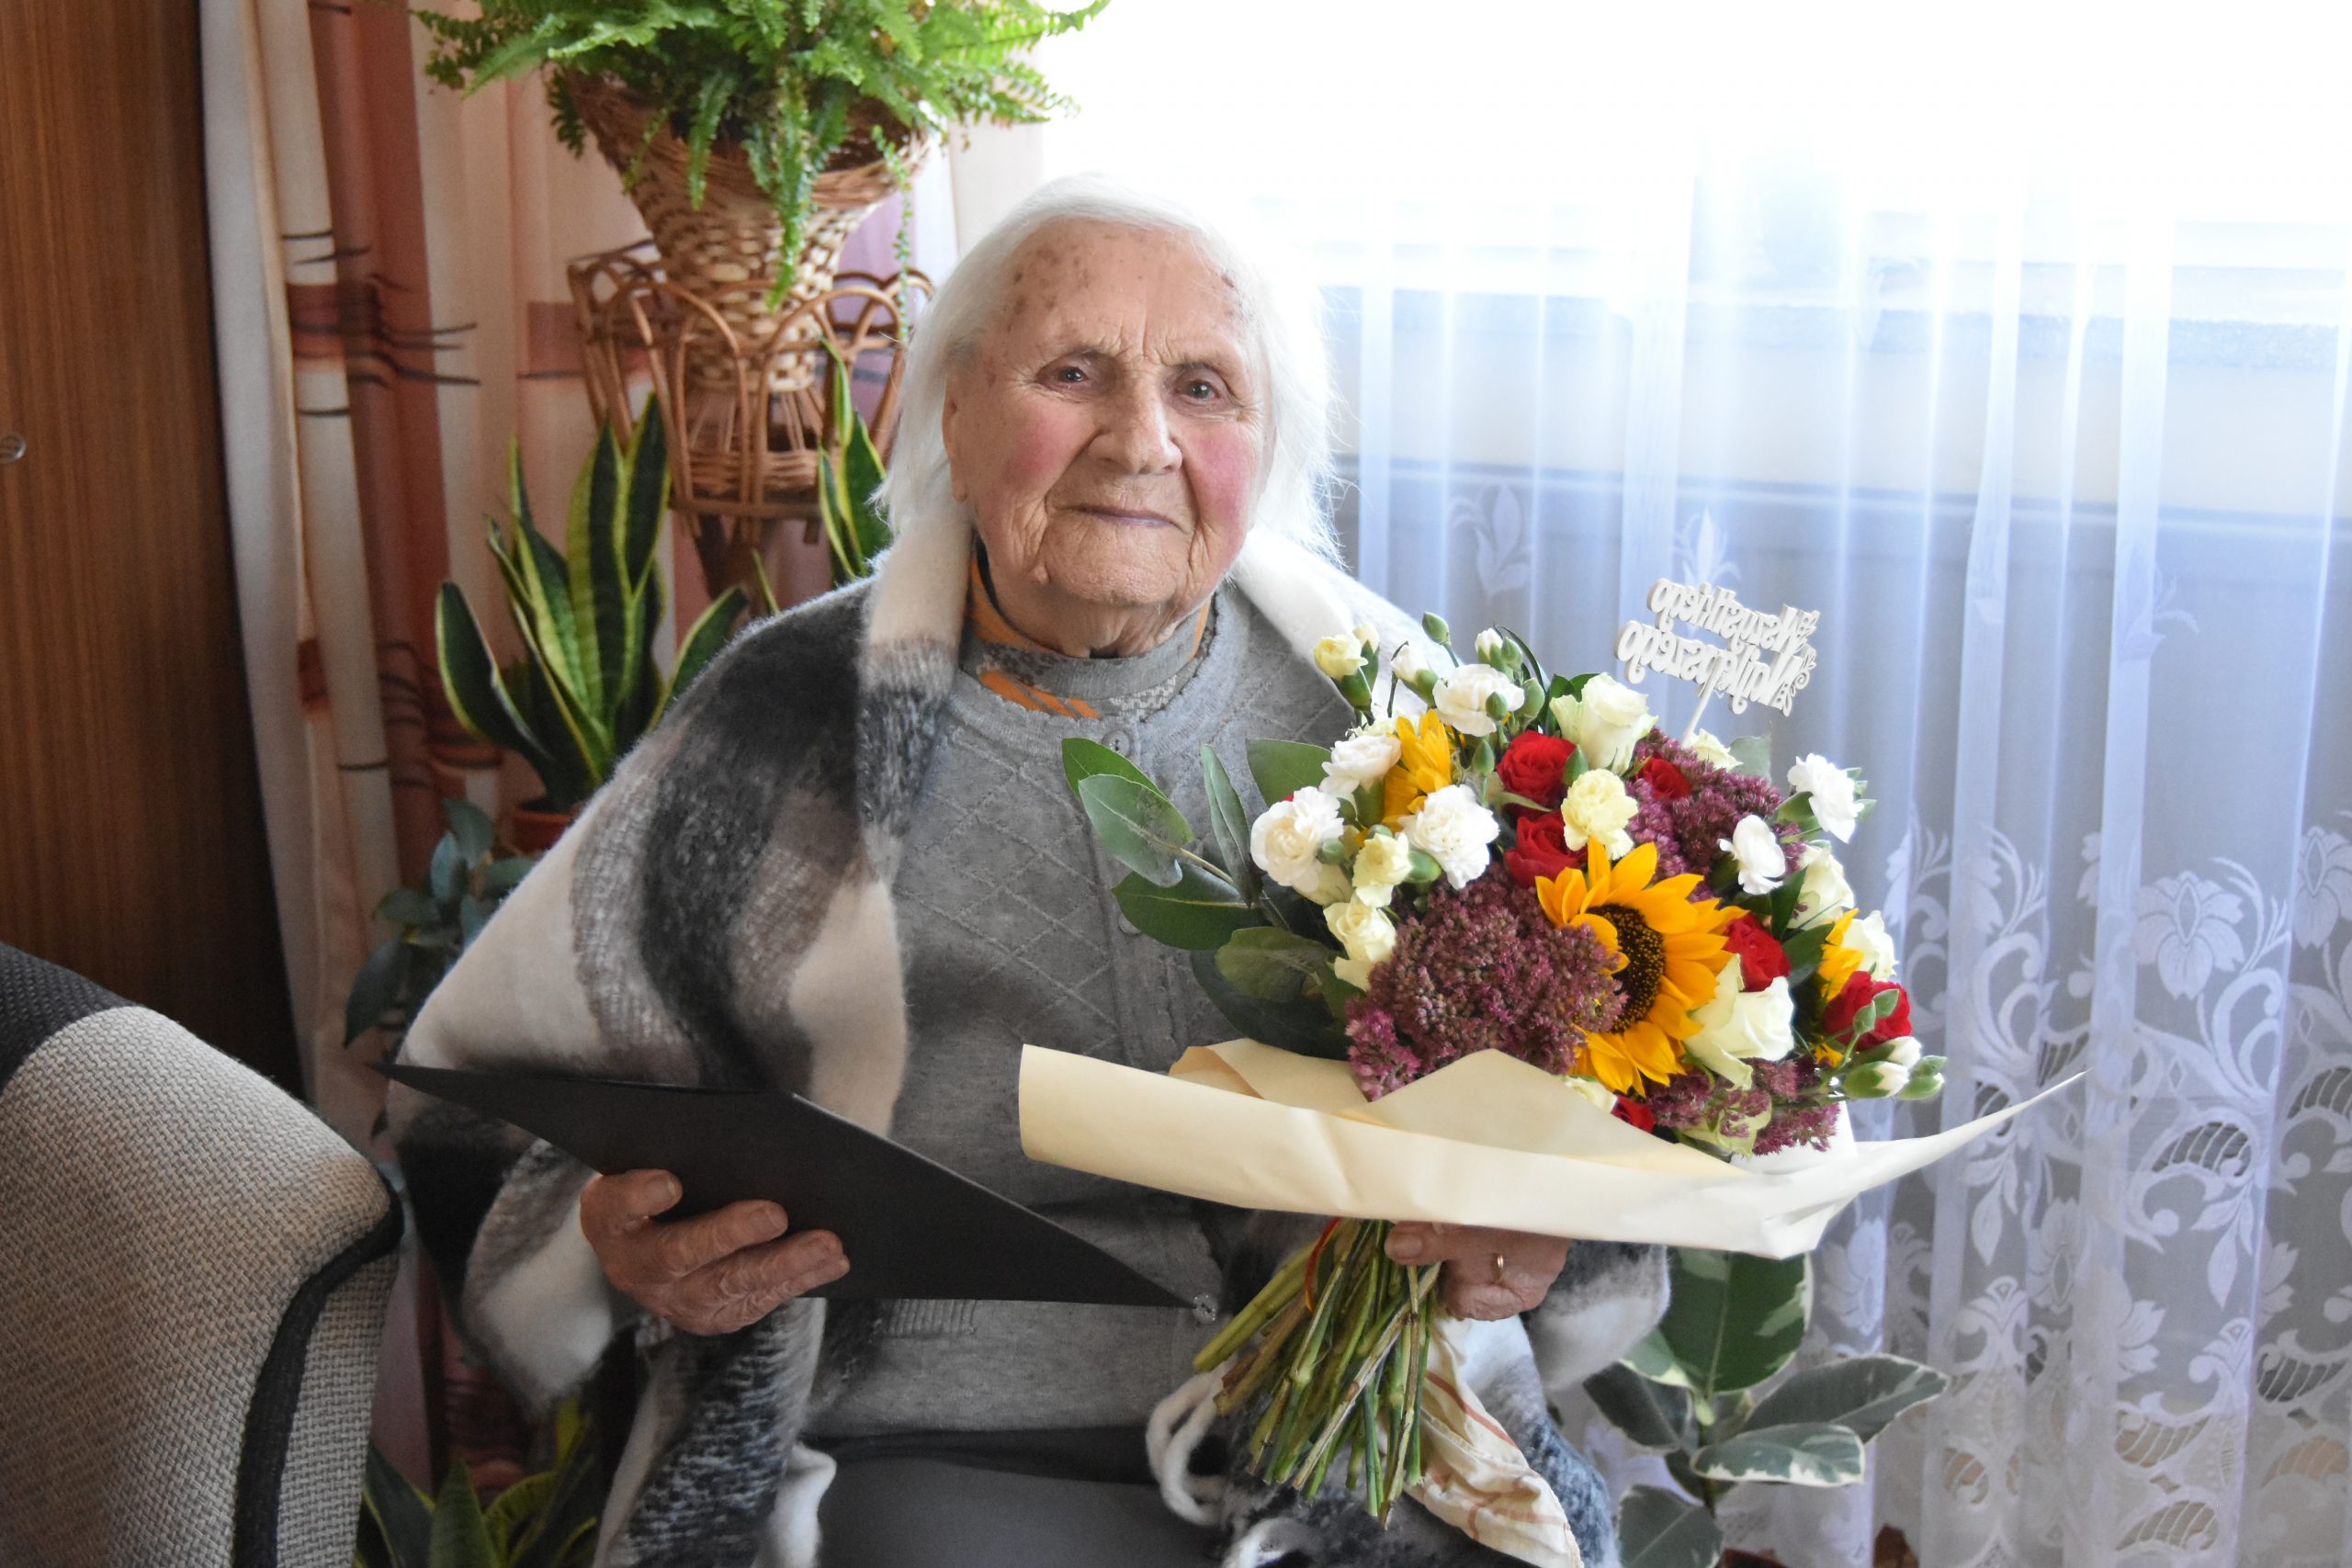 Starsza kobieta z siwymi włosami siedzi na krześle okryta szalikiem, trzyma w rękach bukiet kwiatów i teczkę z życzeniami.